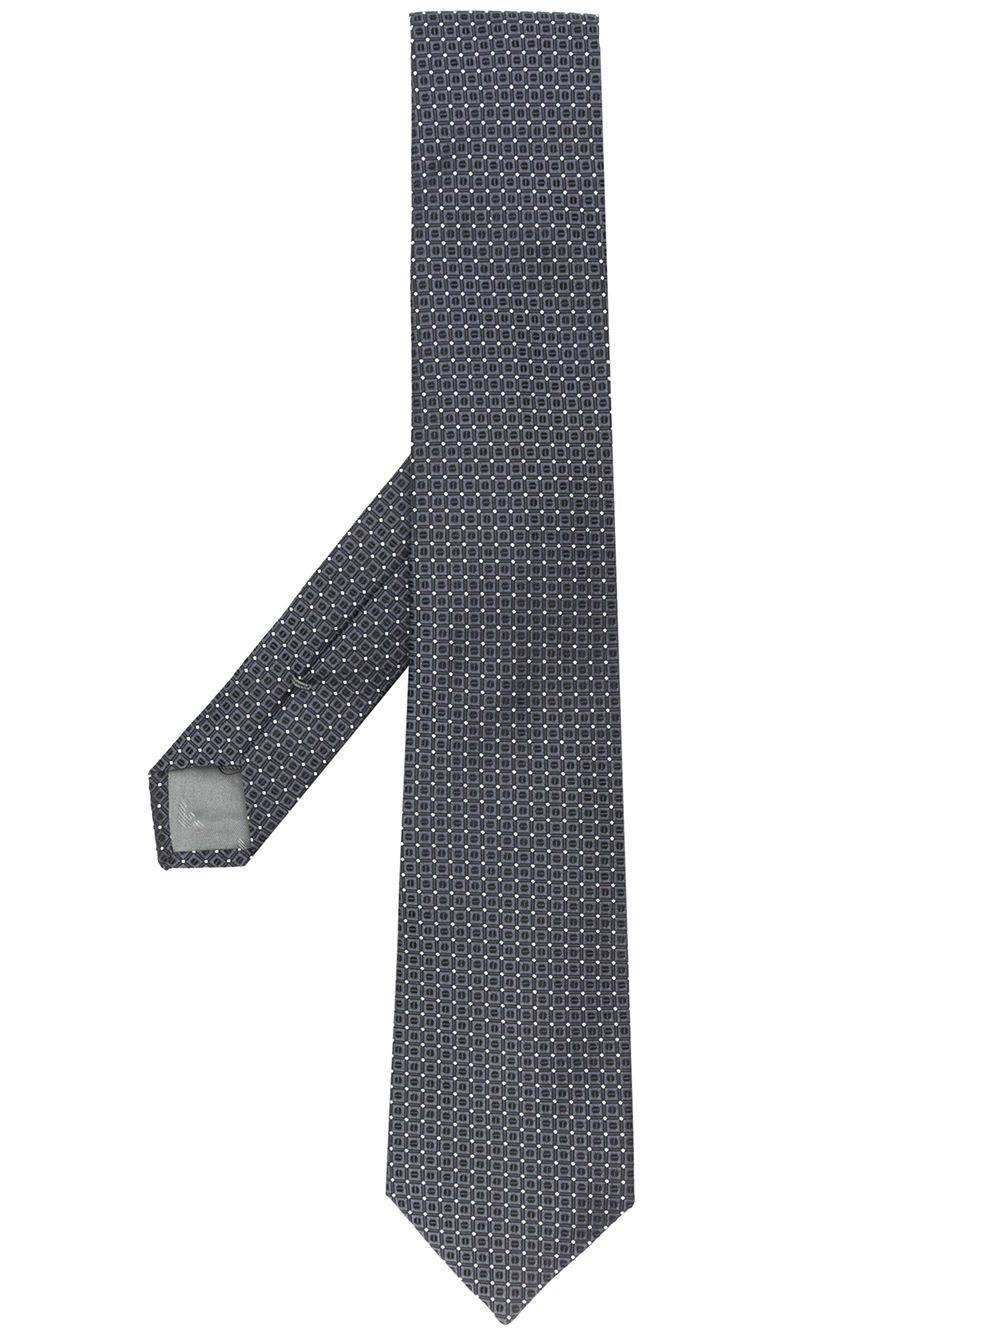 фото Emporio armani галстук с узором